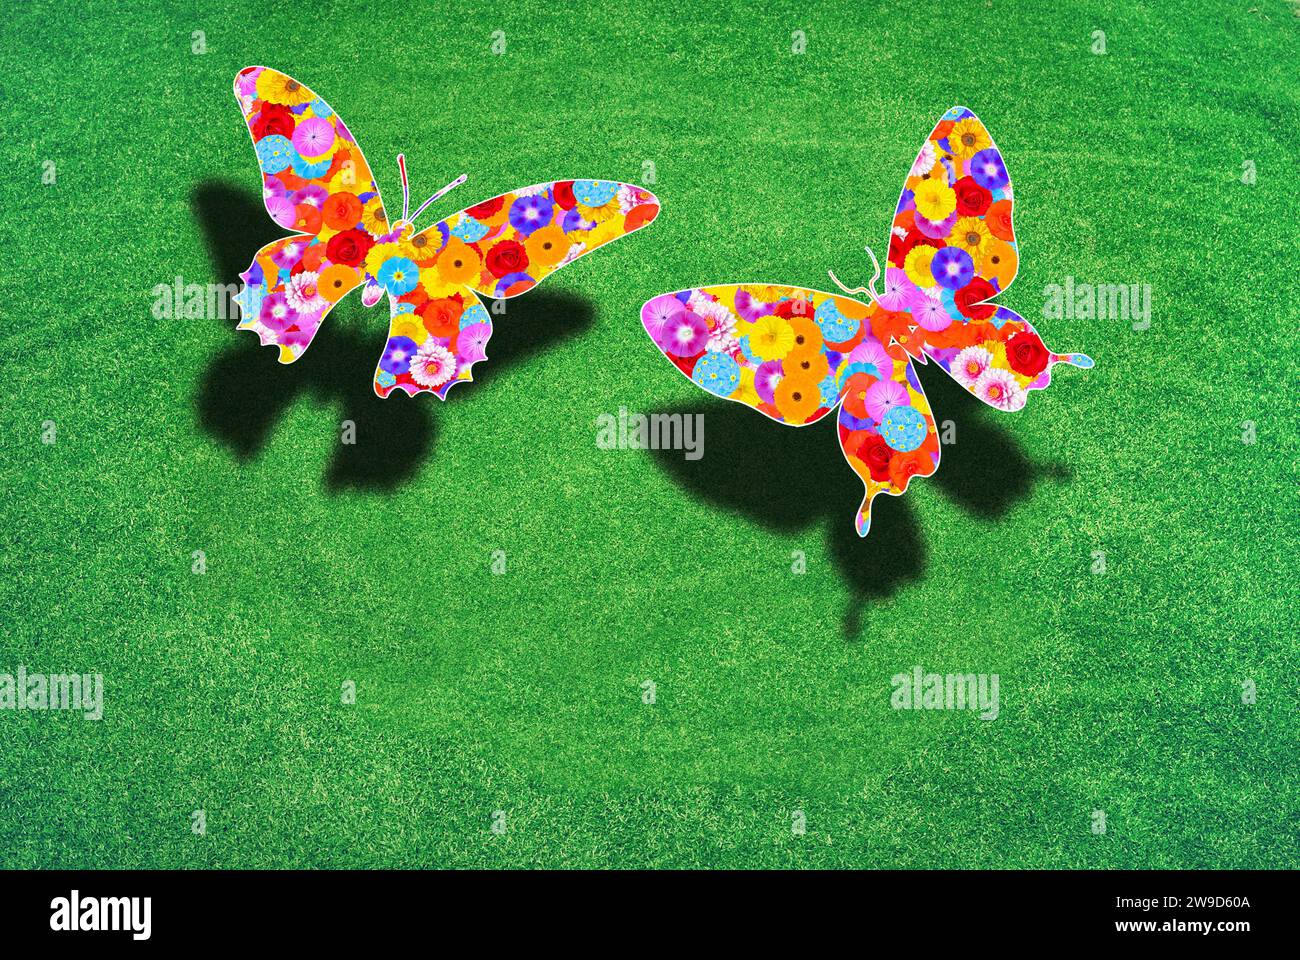 Zwei Schmetterlinge über einem grünen Rasen mit Schatten, die Flügel sind mit Blumen gemustert, Symbol für Naturschutz, Umweltschutz Stockfoto